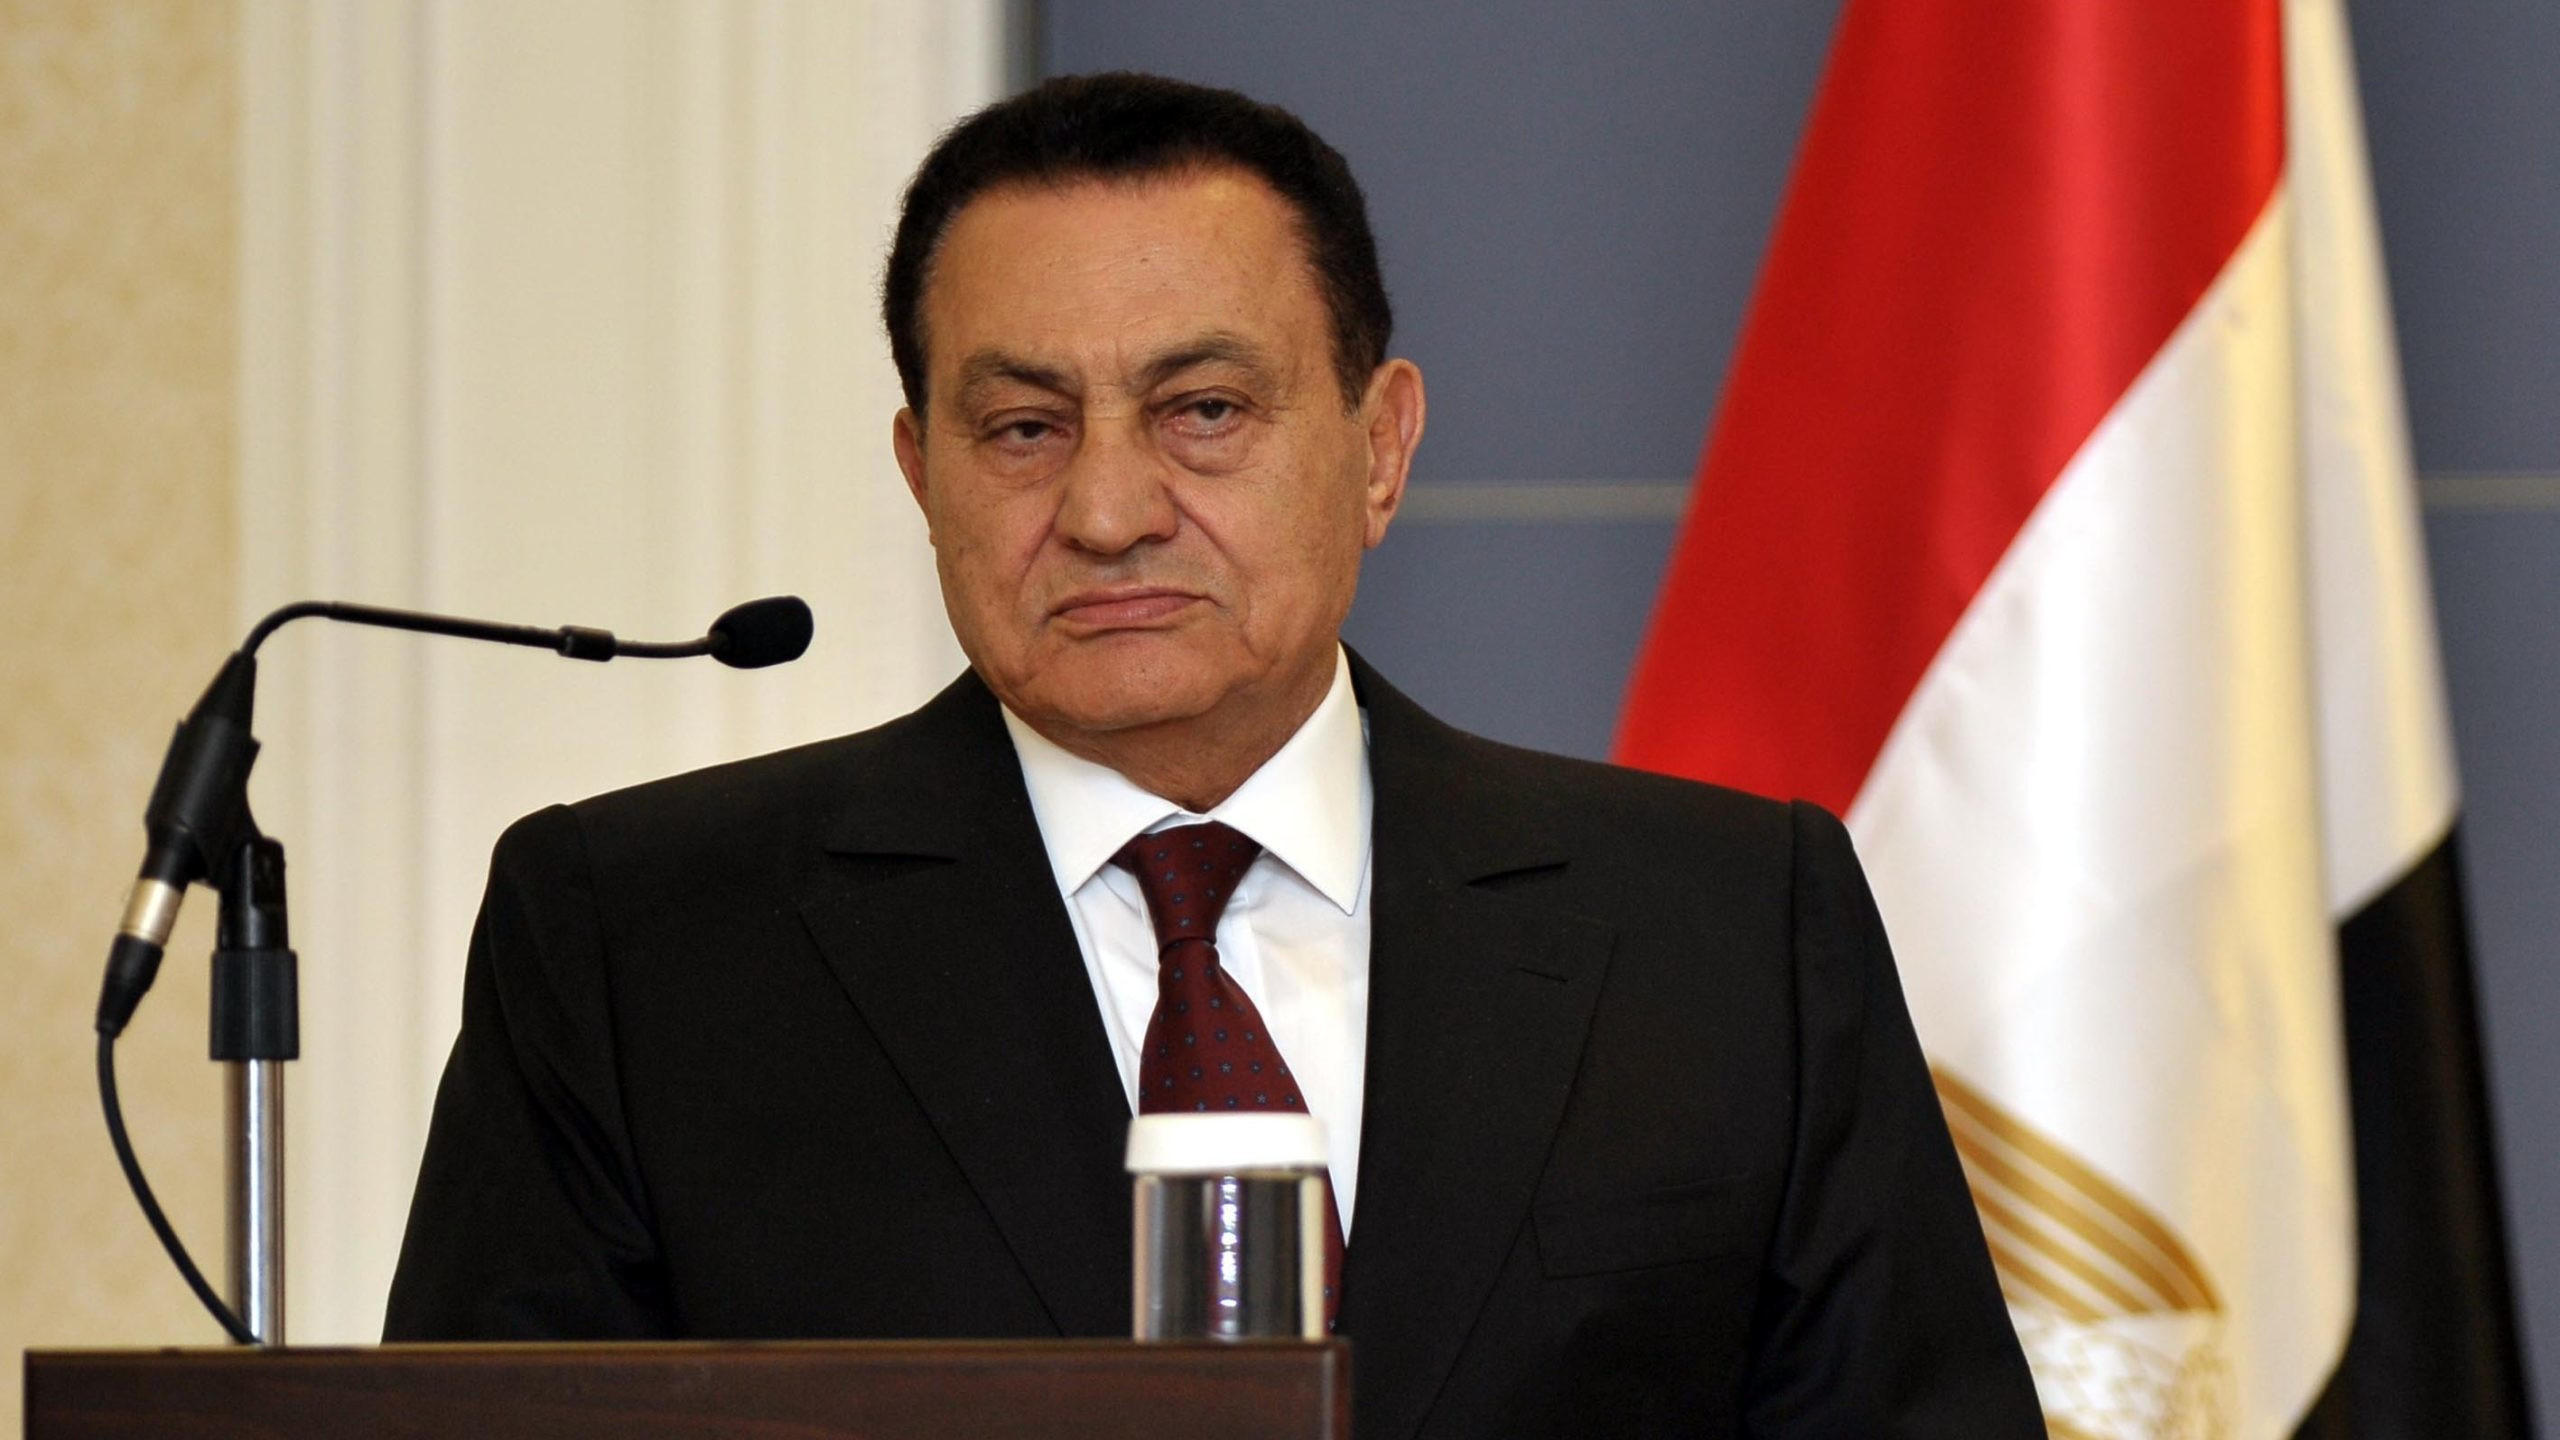 Egypt's Former President Hosni Mubarak Dies at 91